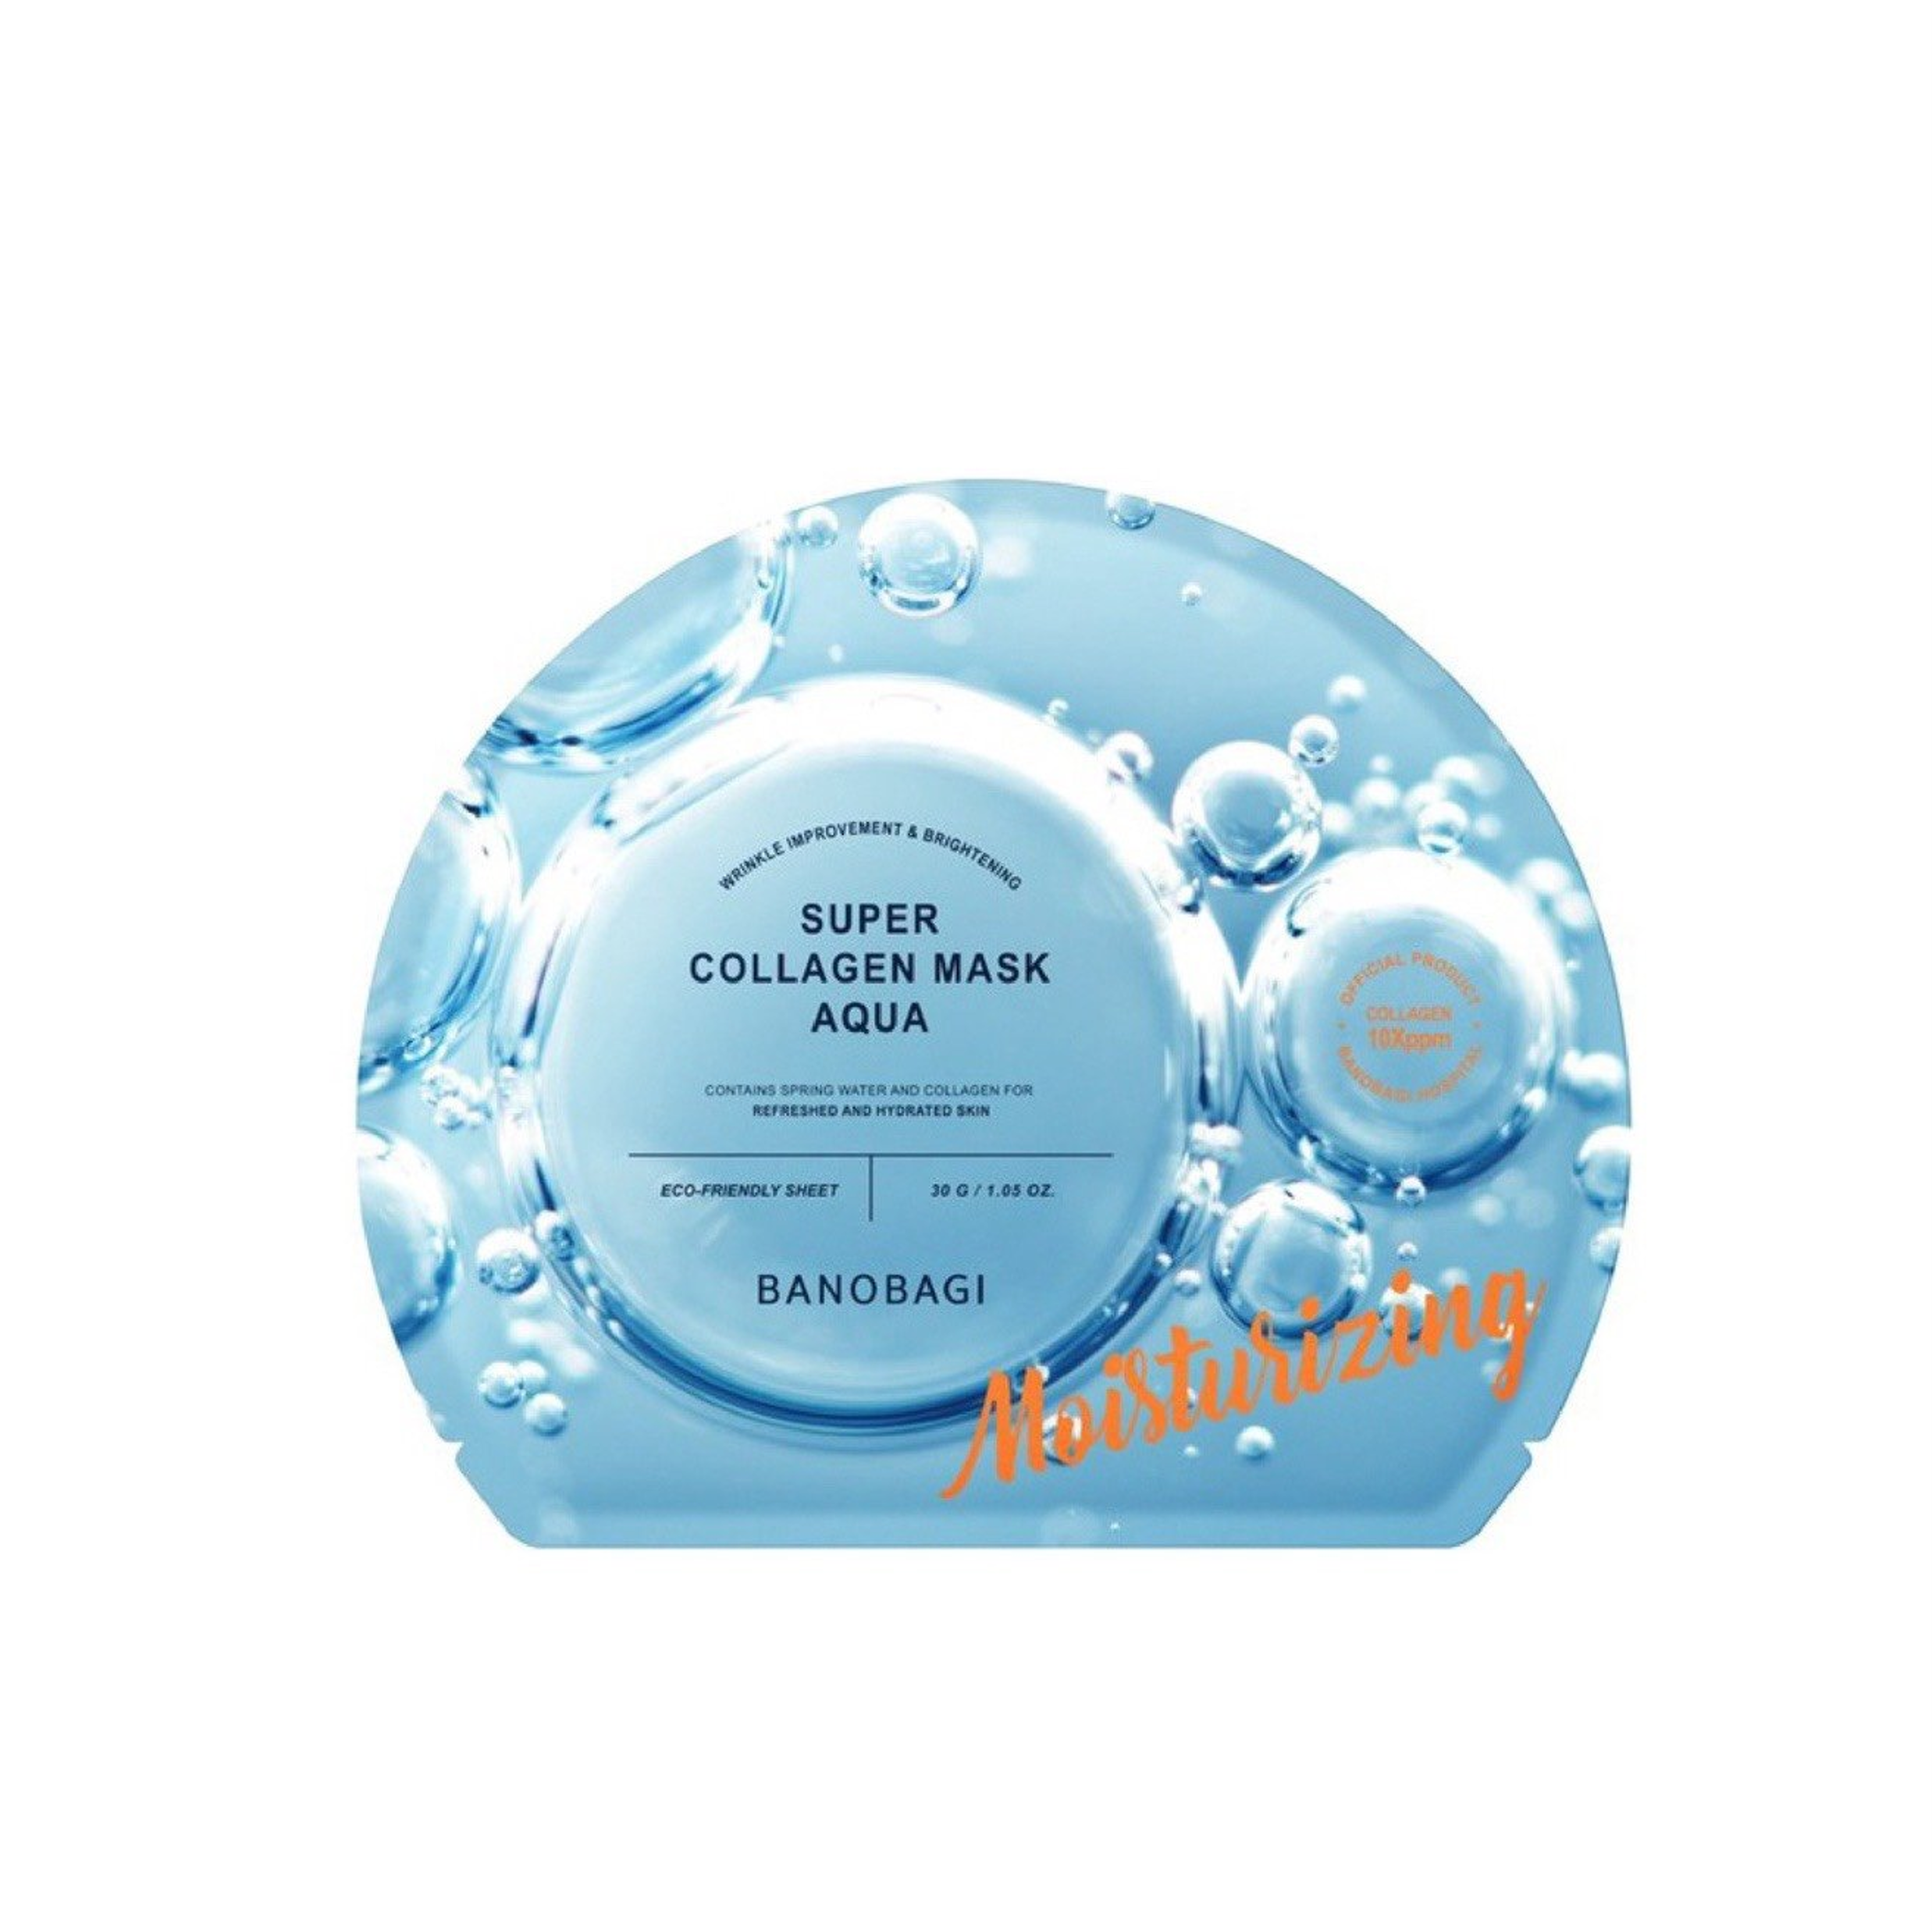 Mặt Nạ Banobagi Super Collagen Mask Aqua (30g)